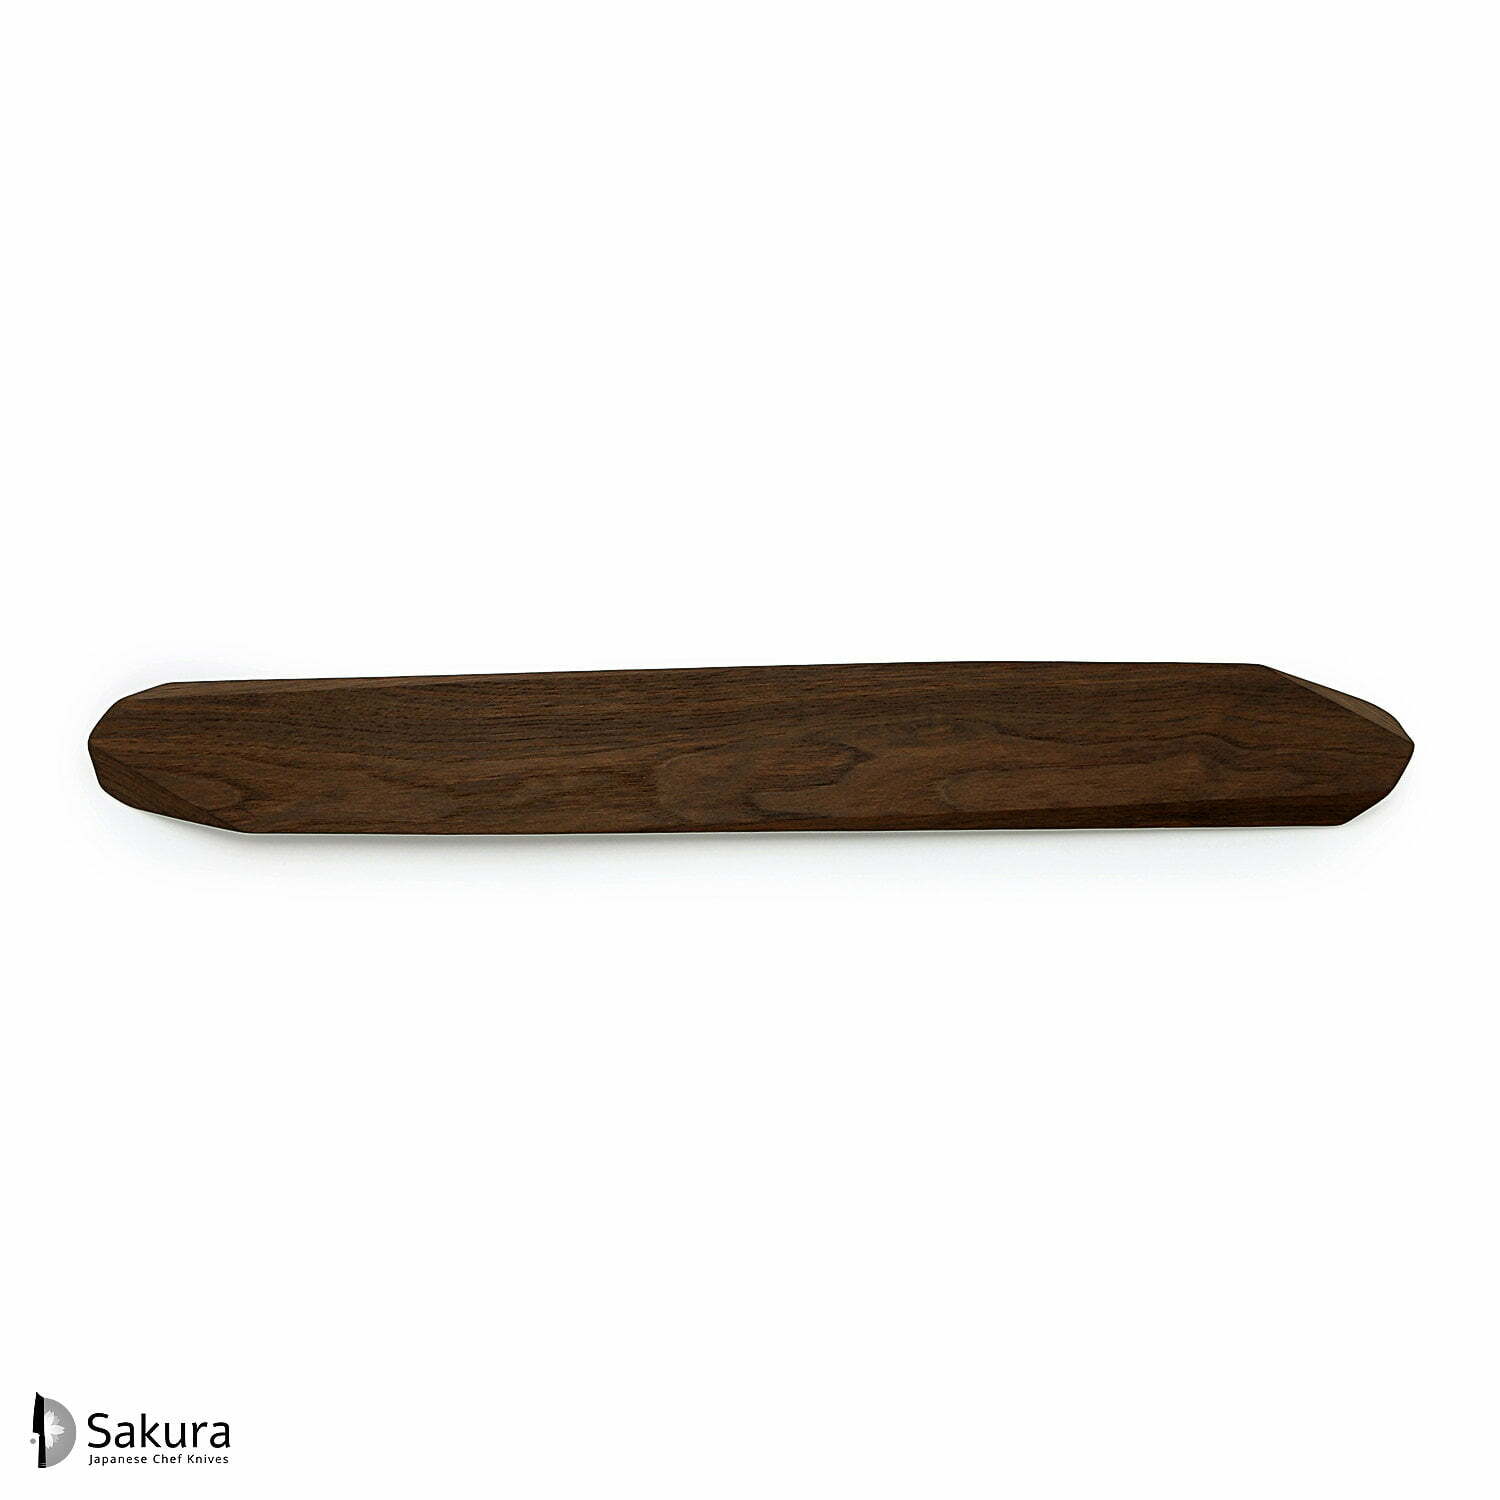 מגנט סכינים 60 ס״מ עץ אגוז חום נוייר דנמרק